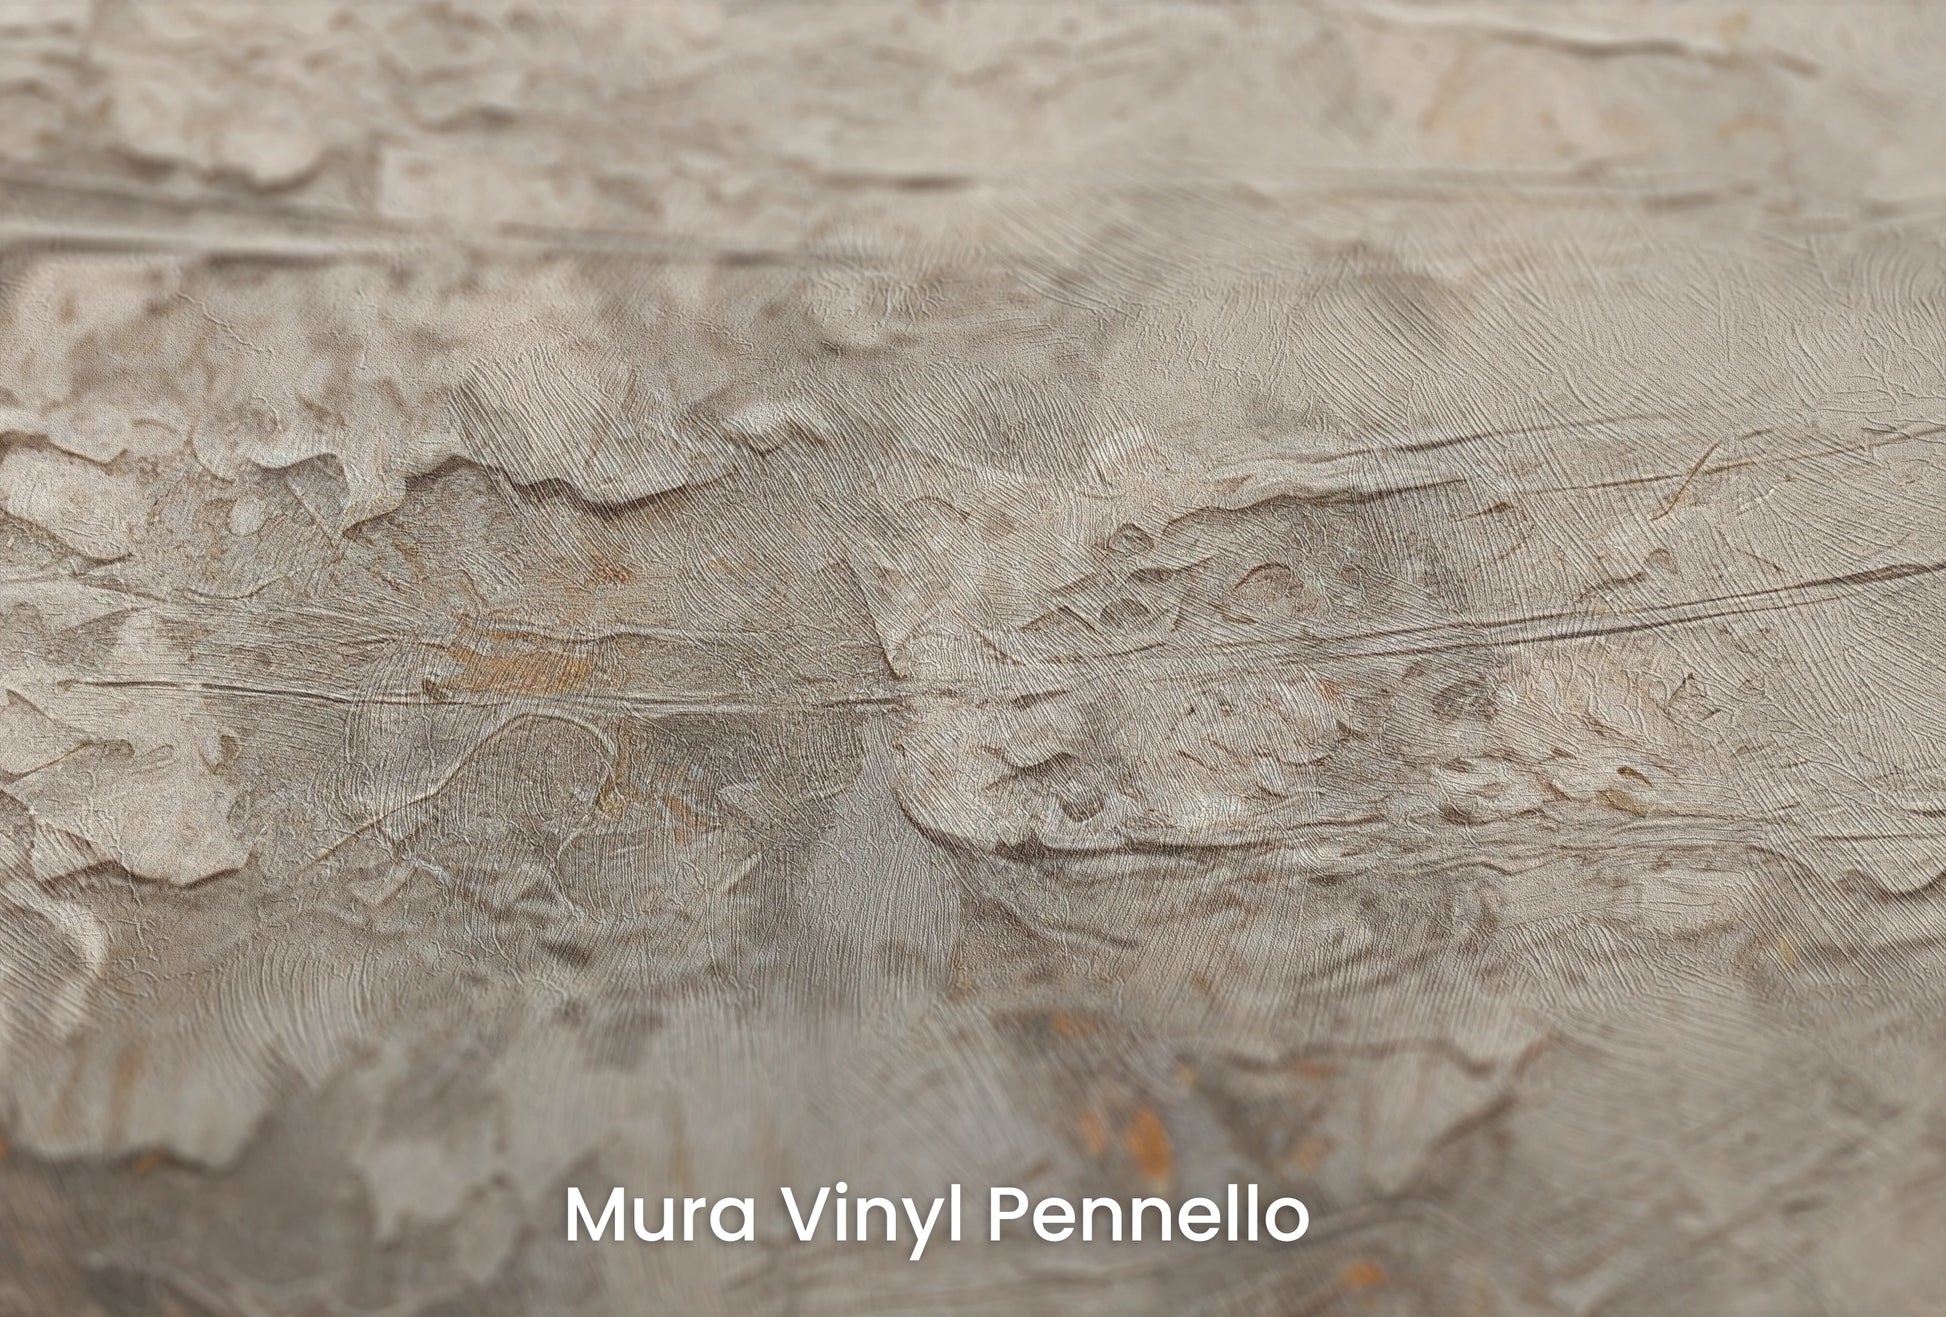 Zbliżenie na artystyczną fototapetę o nazwie Mercury's Veins na podłożu Mura Vinyl Pennello - faktura pociągnięć pędzla malarskiego.